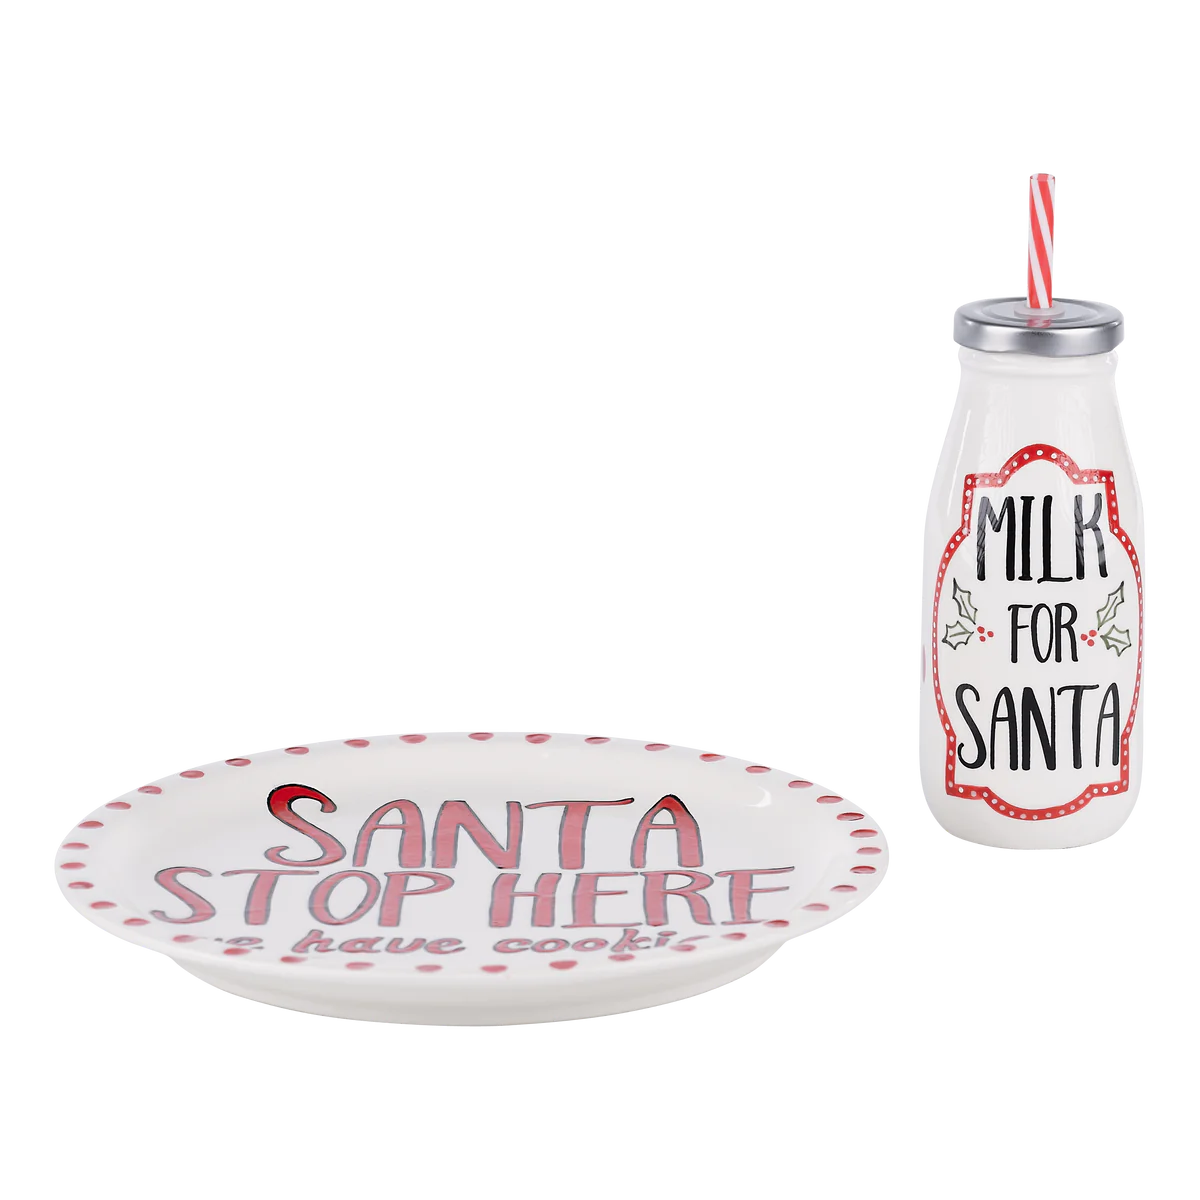 Santa Stop Here Plate and Milk Bottle-Serveware-Podos Boutique, a Women's Fashion Boutique Located in Calera, AL